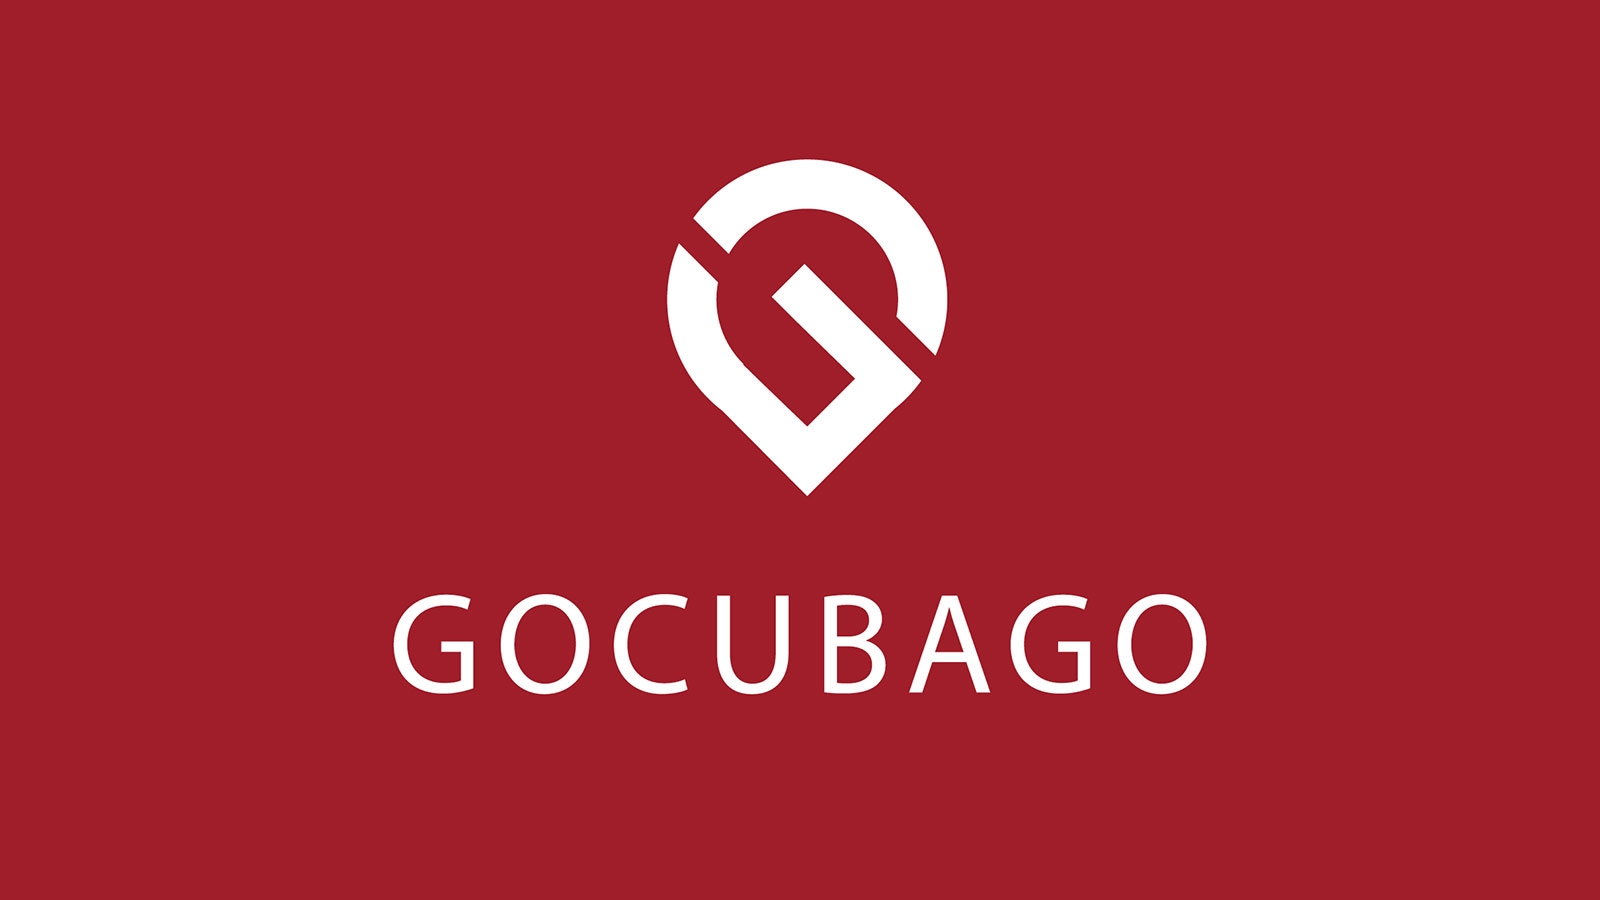 Go Cuba Go | gocubago.com | 2018 (Logo No 03) © echonet communication GmbH